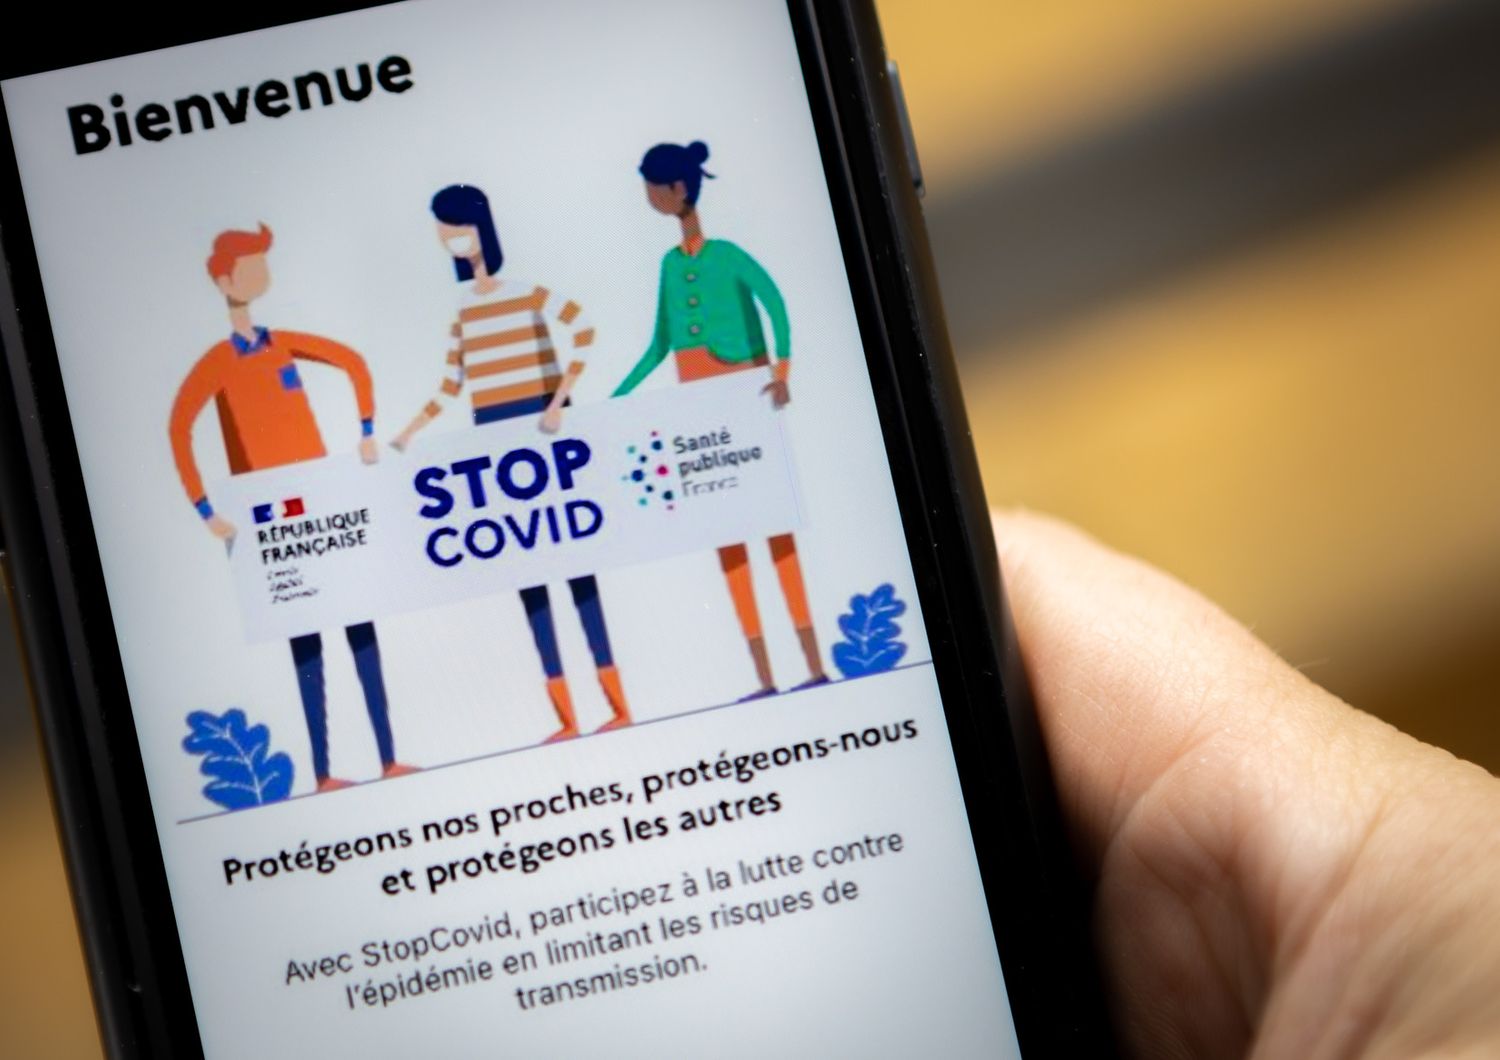 francia app stopcovid scaricata 1 milione volte